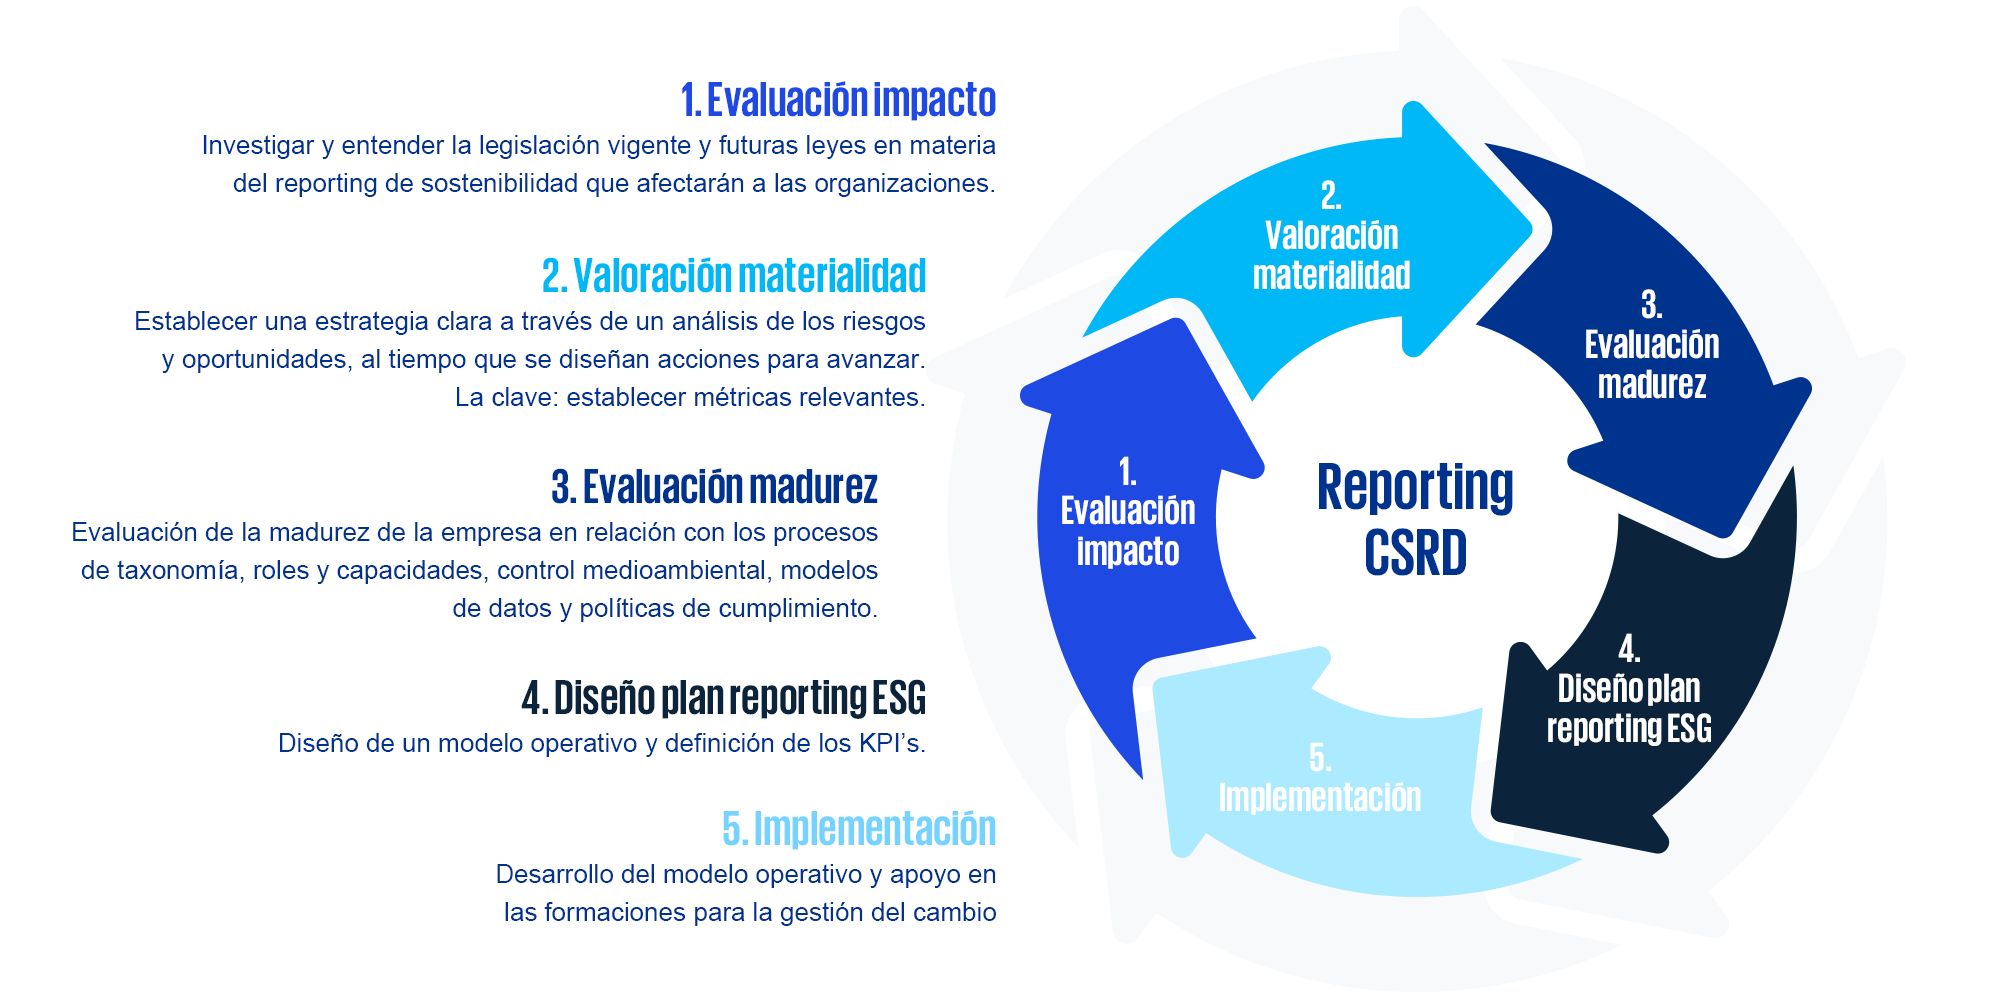 Reporting CSRD